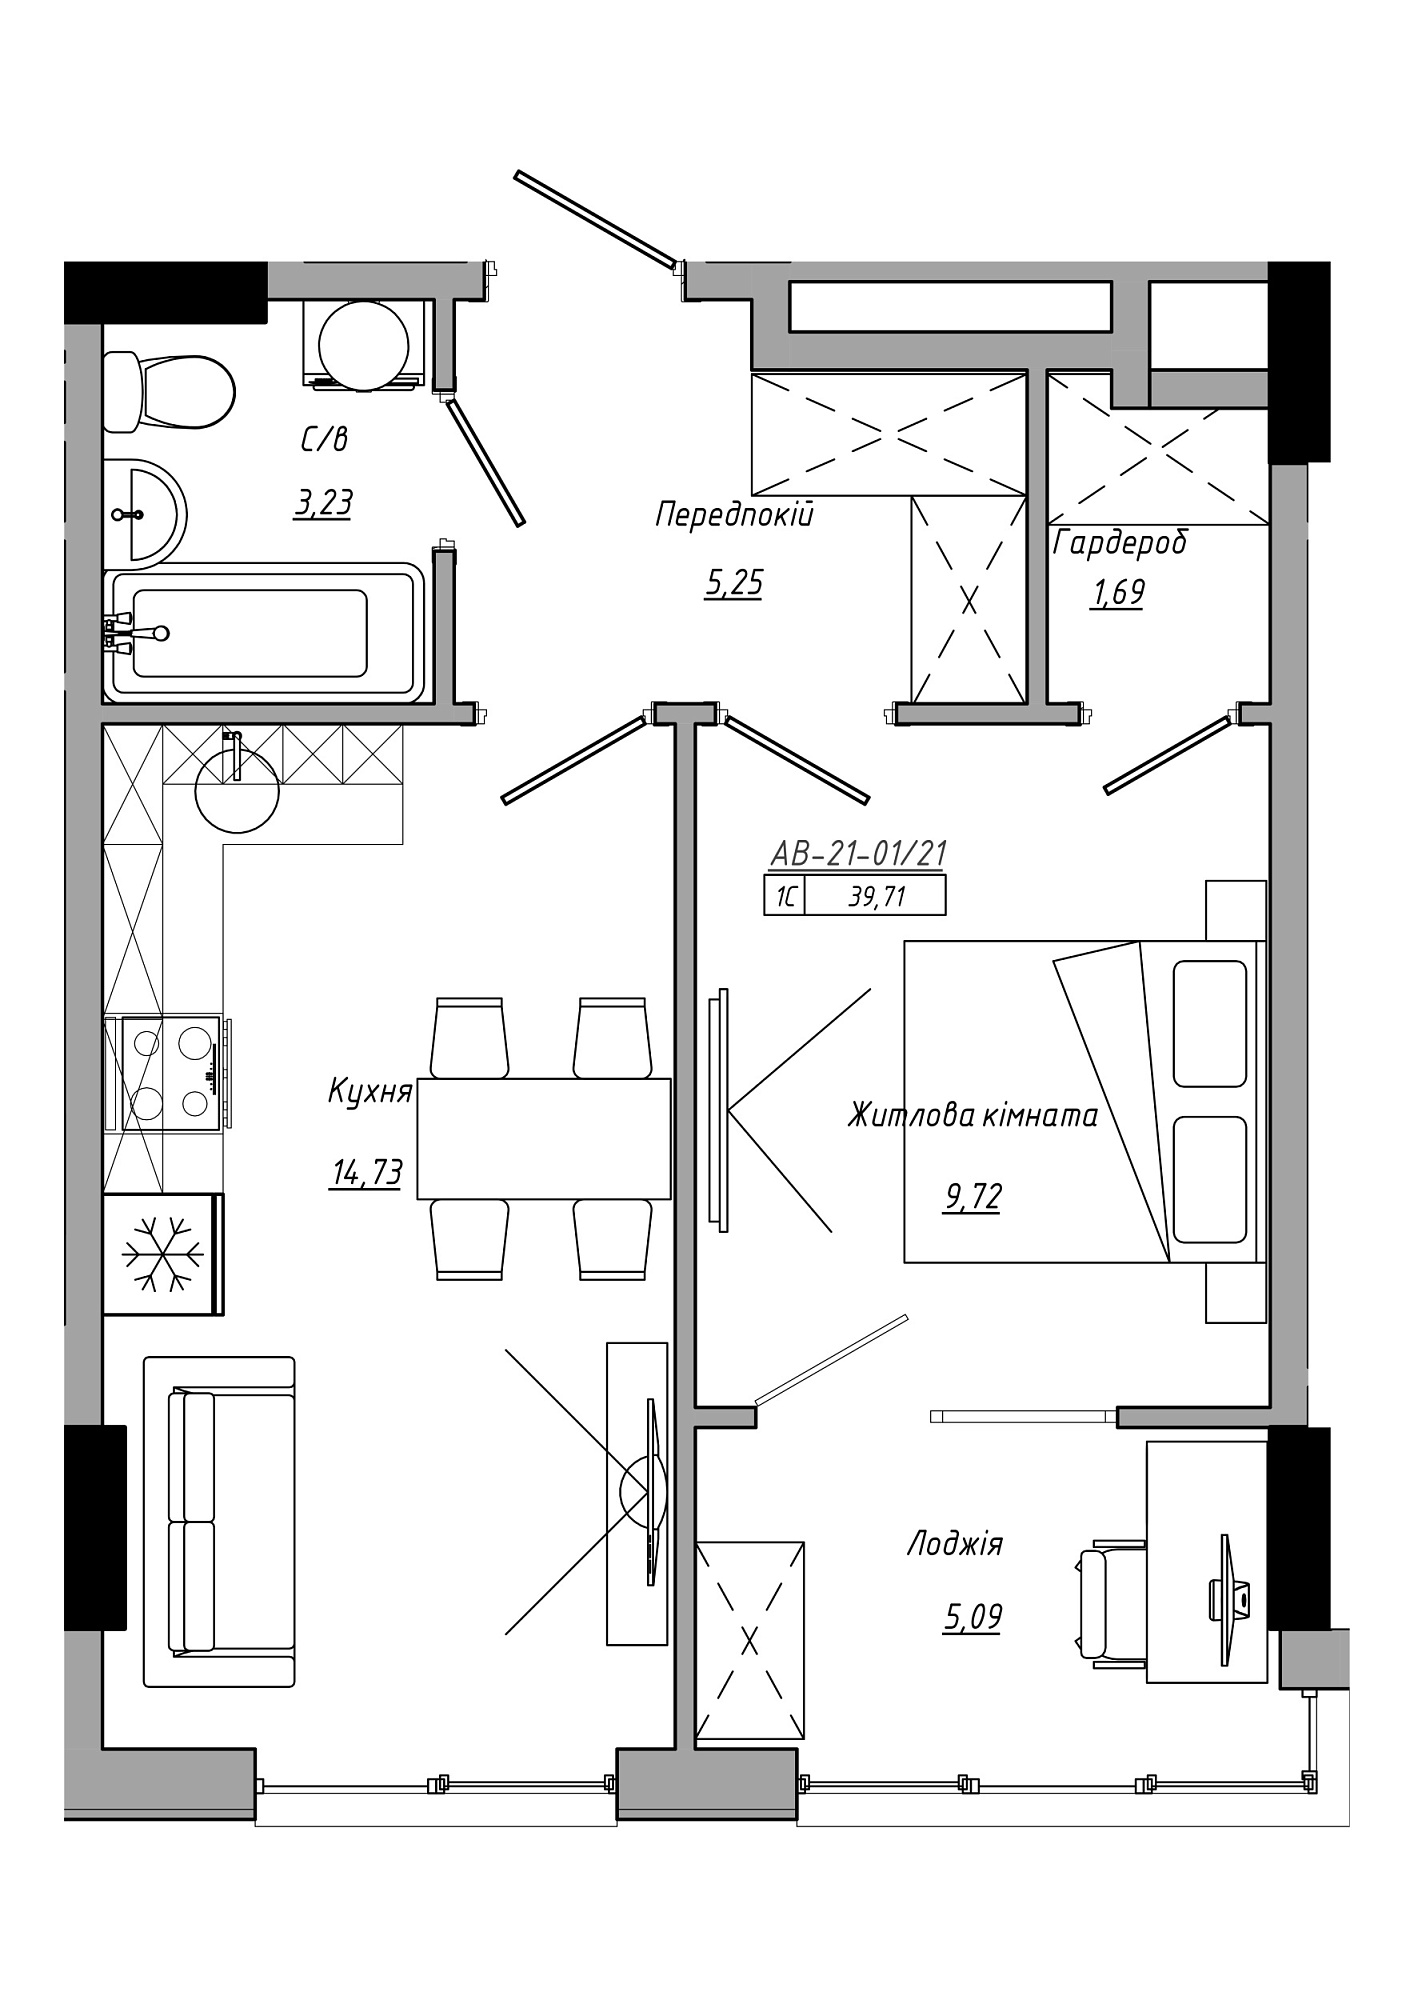 Планування 1-к квартира площею 39.71м2, AB-21-01/00021.